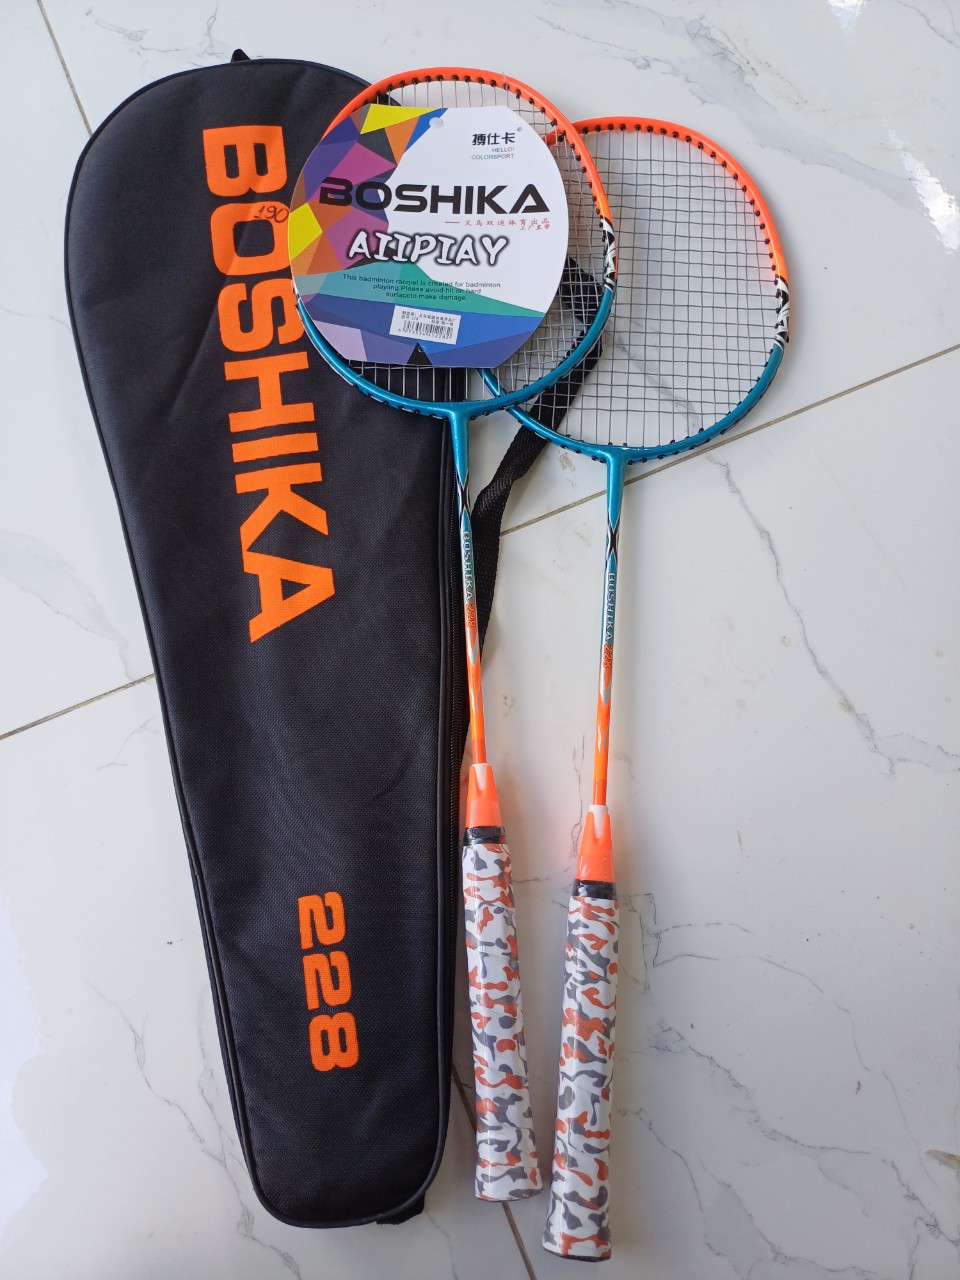 Cặp vợt  cầu lông tập luyện Boshika xịn